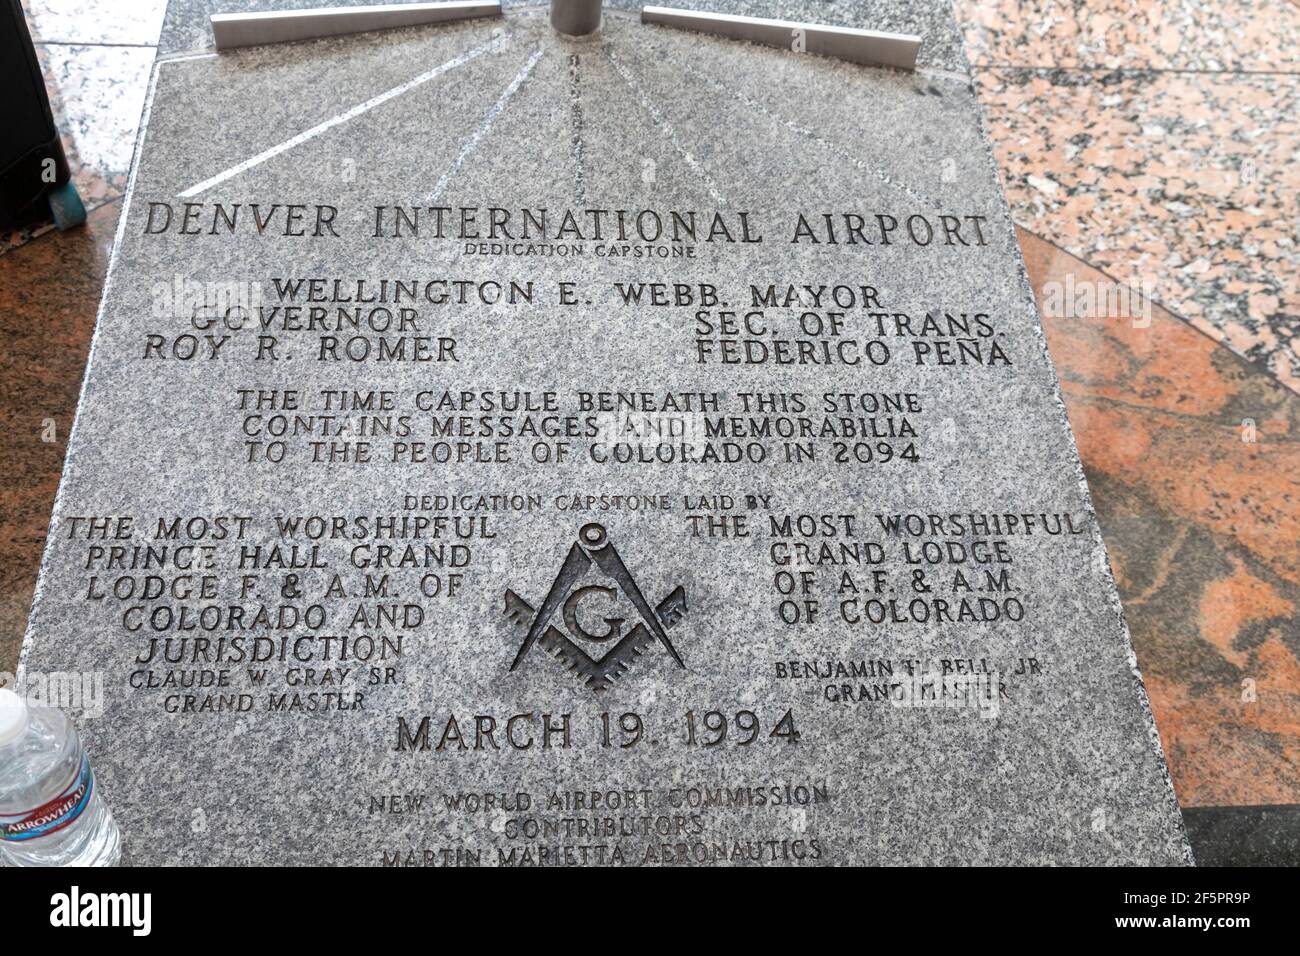 Denver, Colorado - EINE Zeitkapsel, die während des Baus des Denver International Airport im Jahr 1994 begraben wurde. Stockfoto